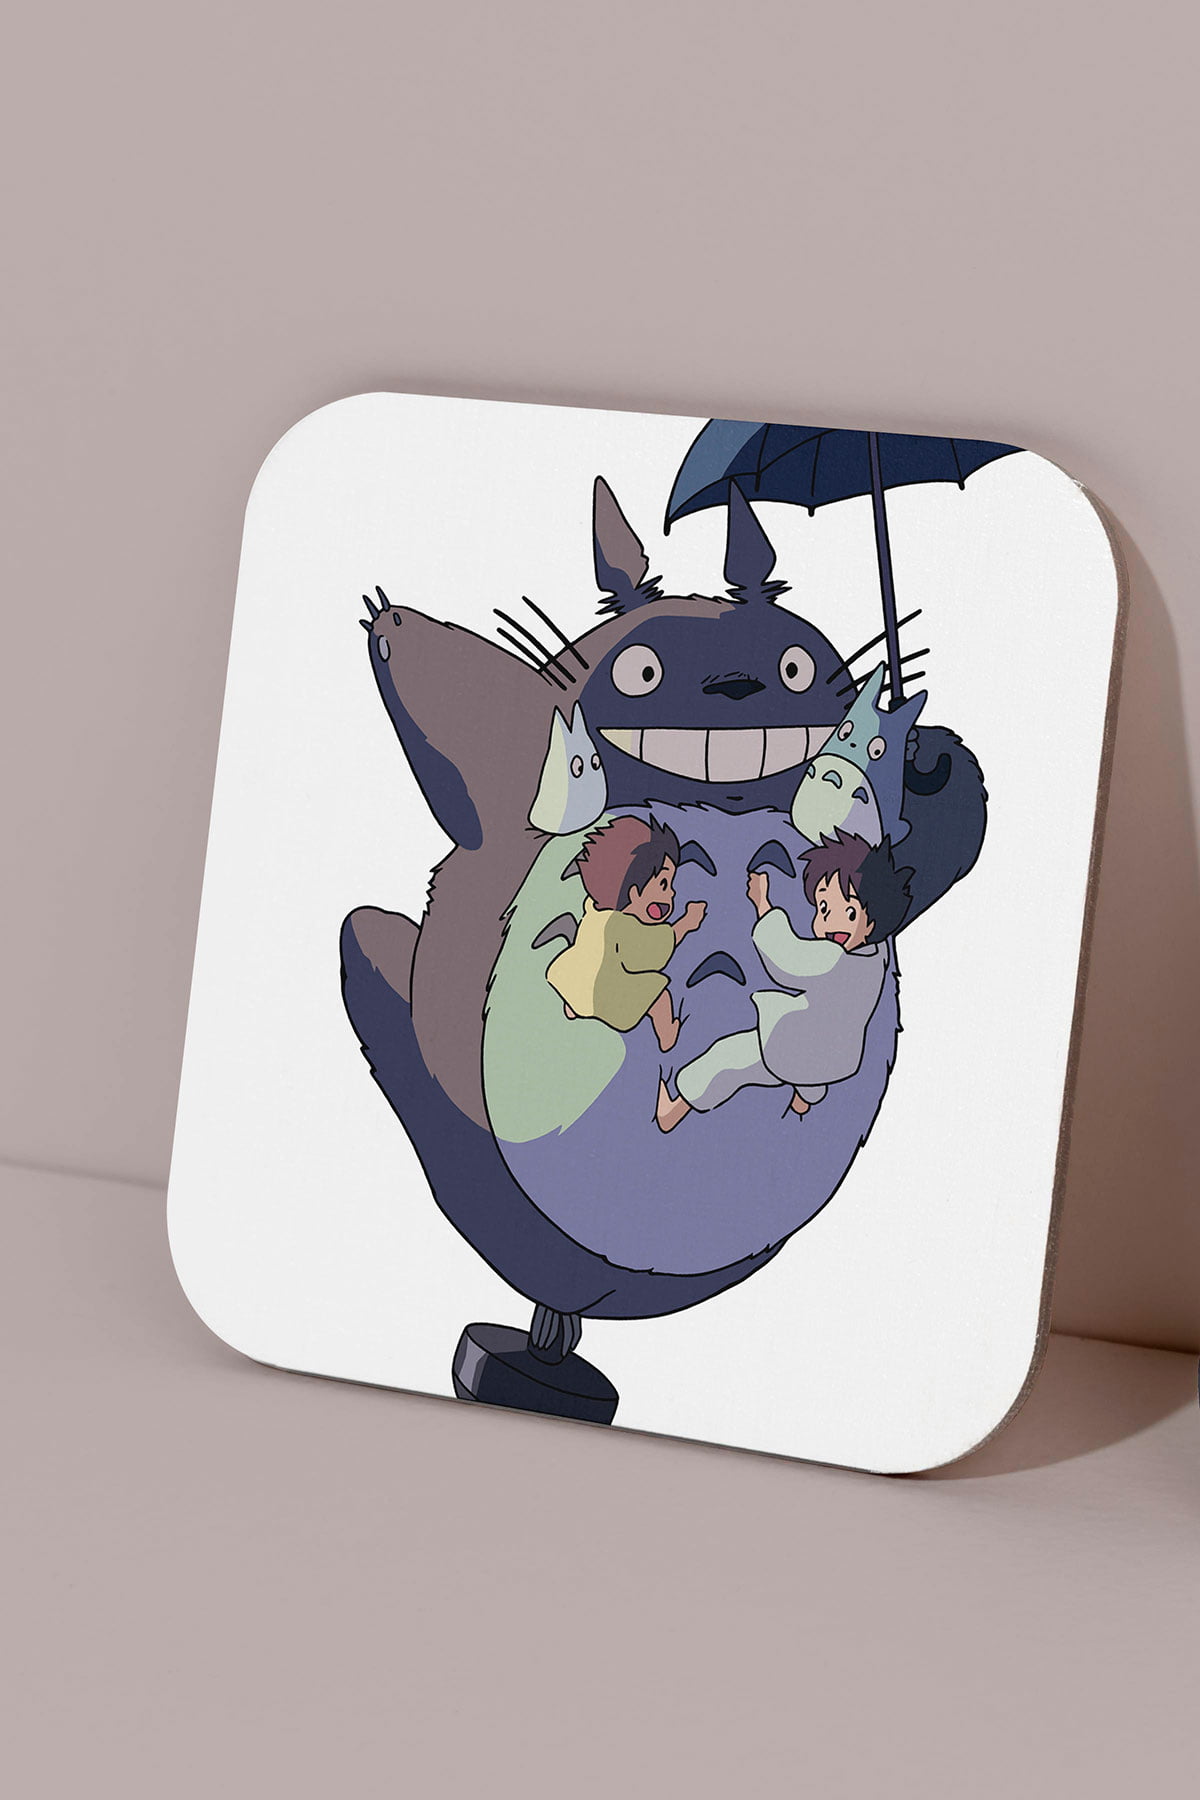 Totoro Bardak Altligi 10